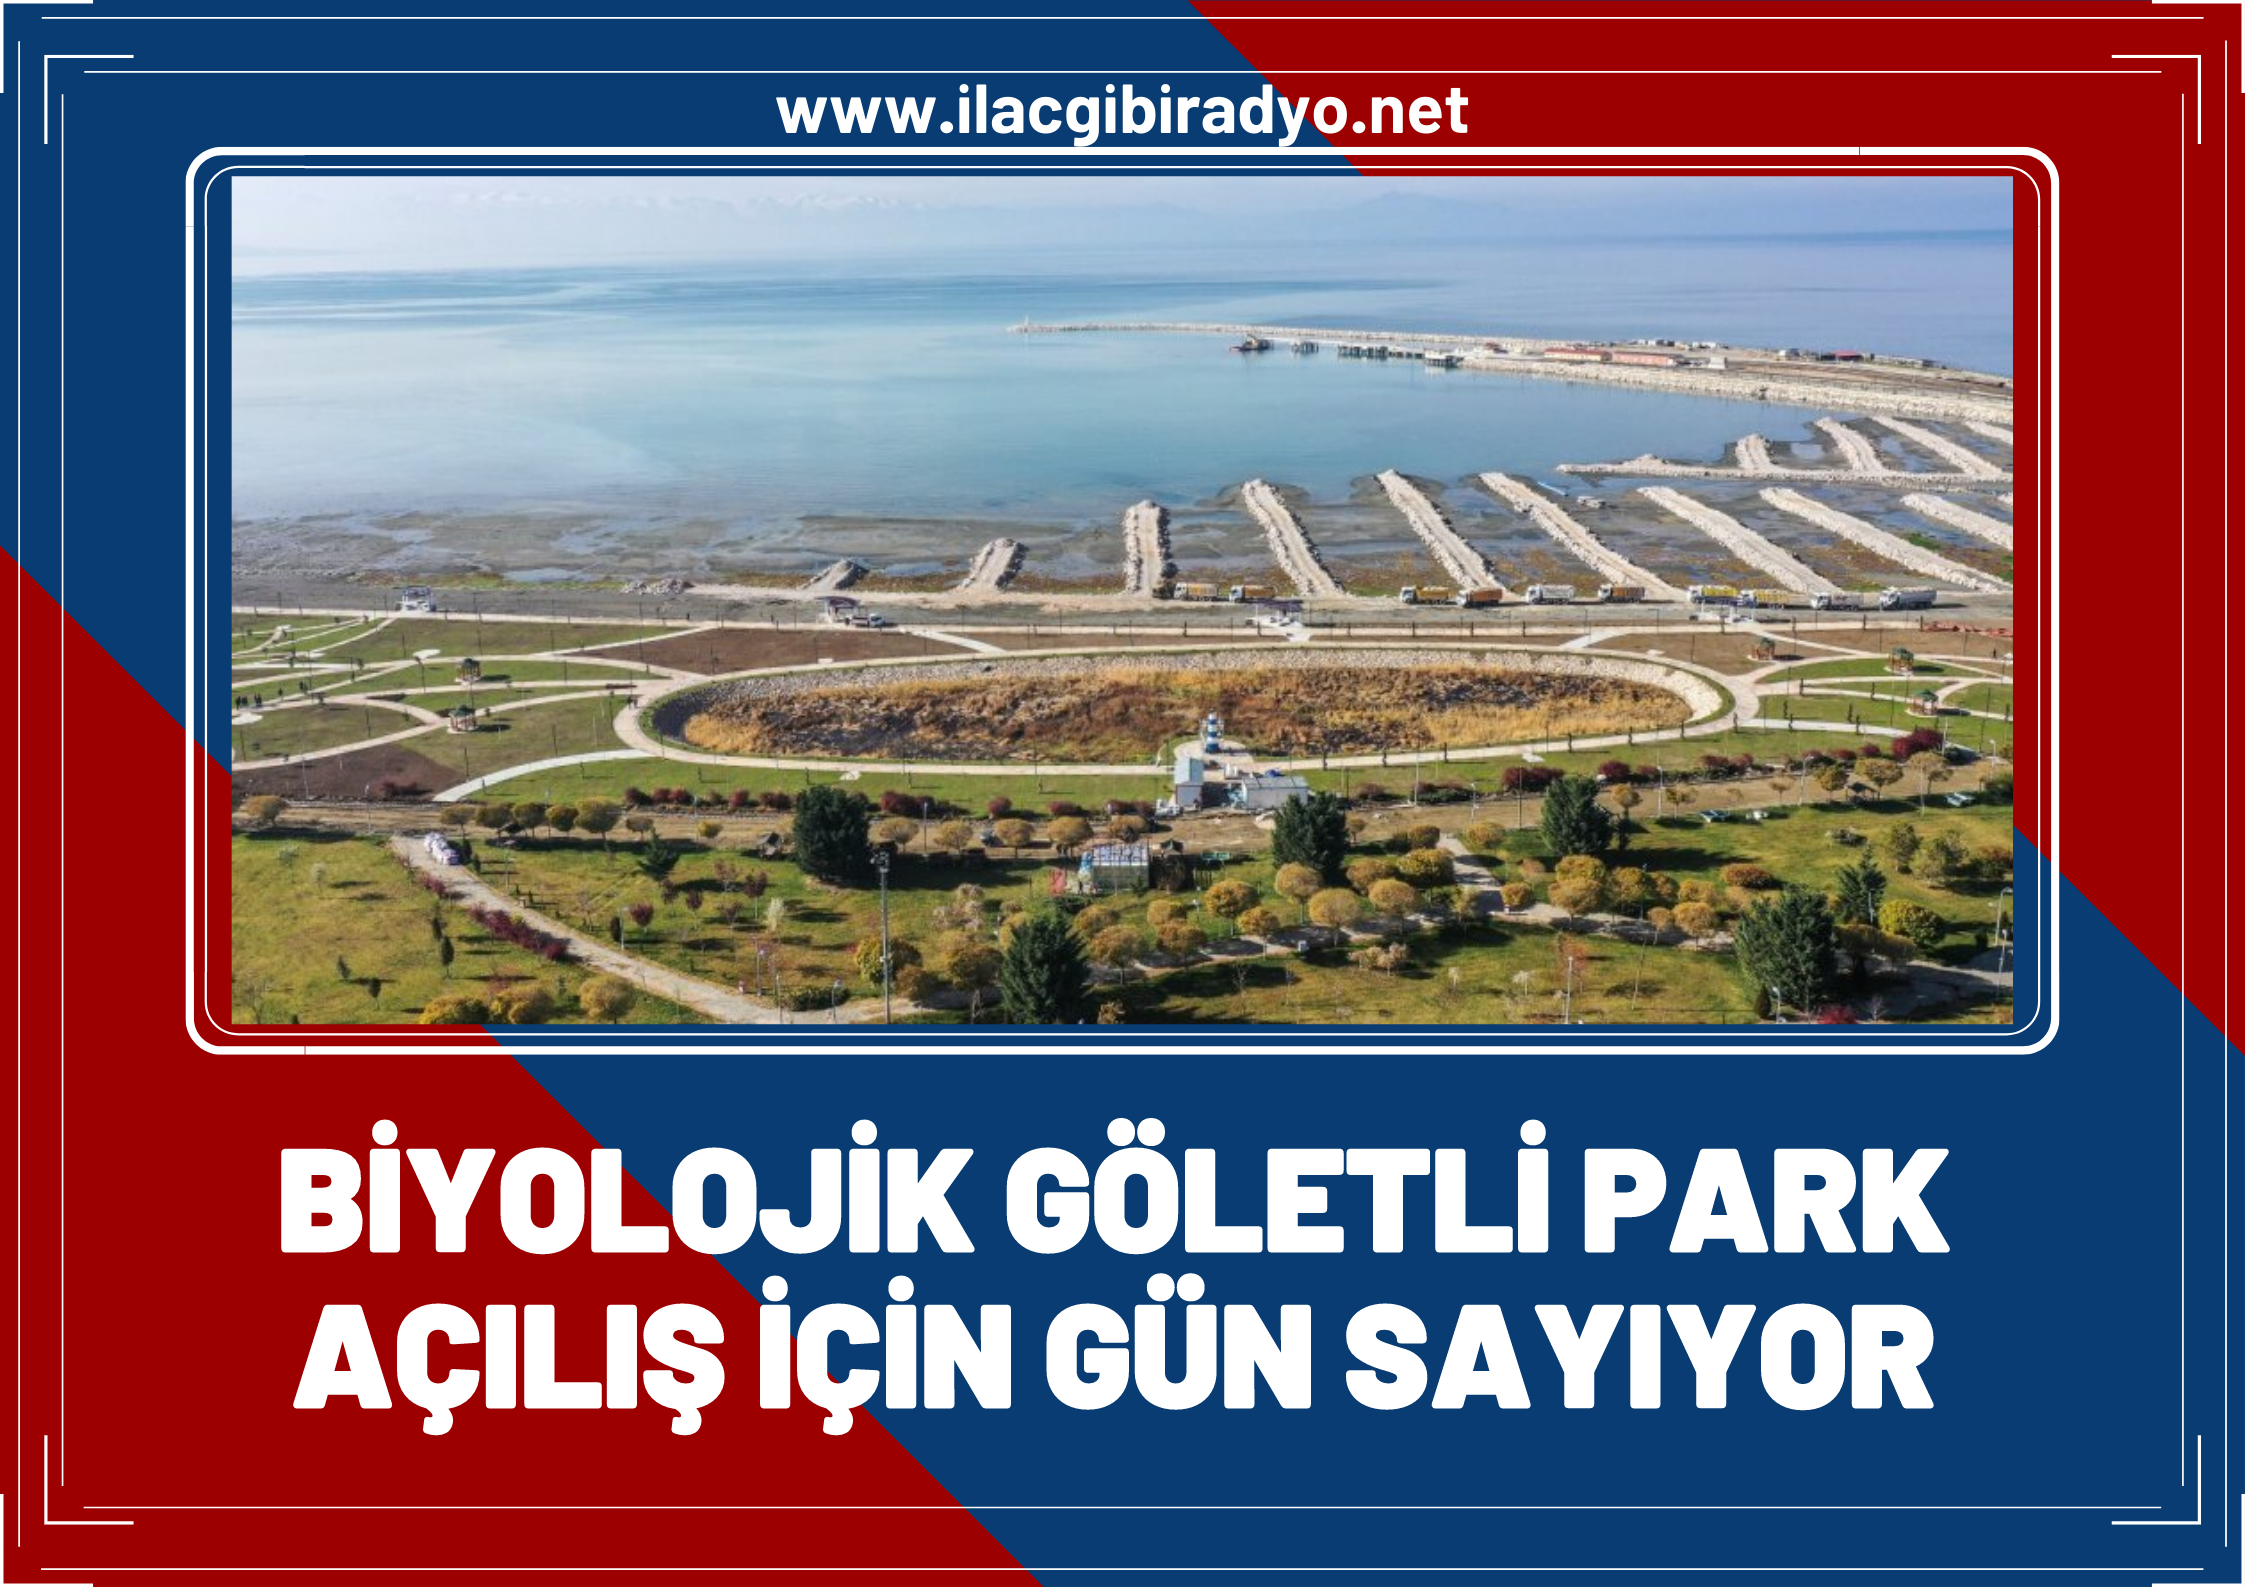 Van Tuşba'ya yeni bir çehre kazandıracak biyolojik göletli park açılışa gün sayıyor!